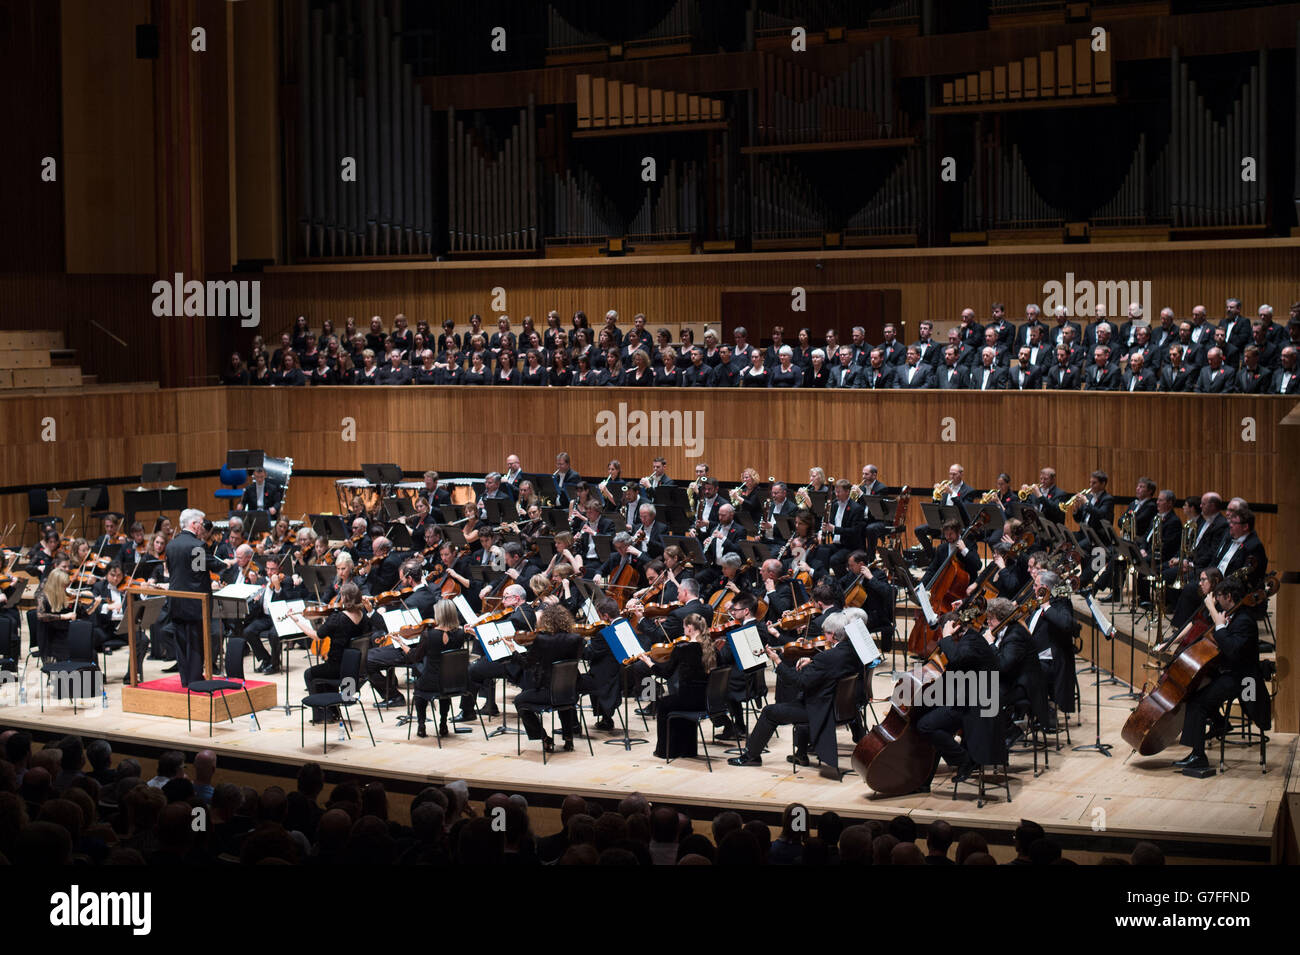 Le chef d'orchestre Pinchas Zukerman dirige l'Orchestre du Centre national des Arts du Canada et l'Orchestre philharmonique royal dans une représentation conjointe au Royal Festival Hall de Londres. Banque D'Images